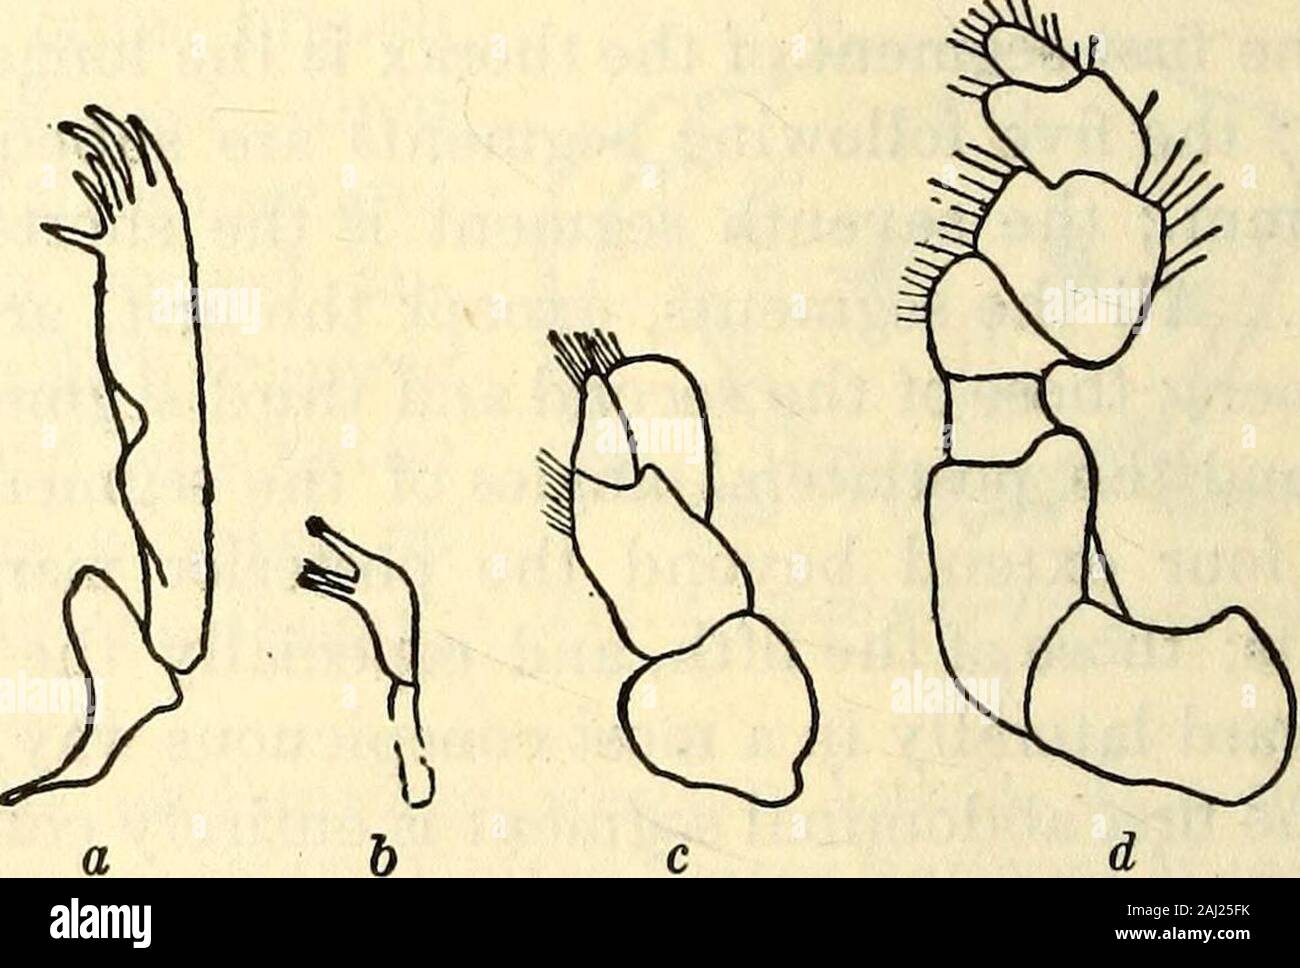 Marine Asseln in den Philippinen gesammelt von den USA Fischerei dampfer Albatross in 1907-08. Ines. Das Innere der branchof uropoda ist breit und Longerthan das Terminal Abdominal- Seg- ment; es ist schräg abschneiden mit dem Äußeren, postlateral Winkel pro-eingeführt, der Posterioren rand Fell - nished mit fünf Zähnen und hebendie äußeren Rand eingeschnitten, mit twoteeth im Schnitt. Dieäußeren Zweig ist schmal, und pro-reduziert zu einem akuten Extremität End-ing in zwei Zähne, sowohl marginsbeing Gyrus. Die uropods und das Terminal abdominal Segments sind gesäumt withhairs auf die Margen. Die ersten drei pairsof Beine sind Stockfoto